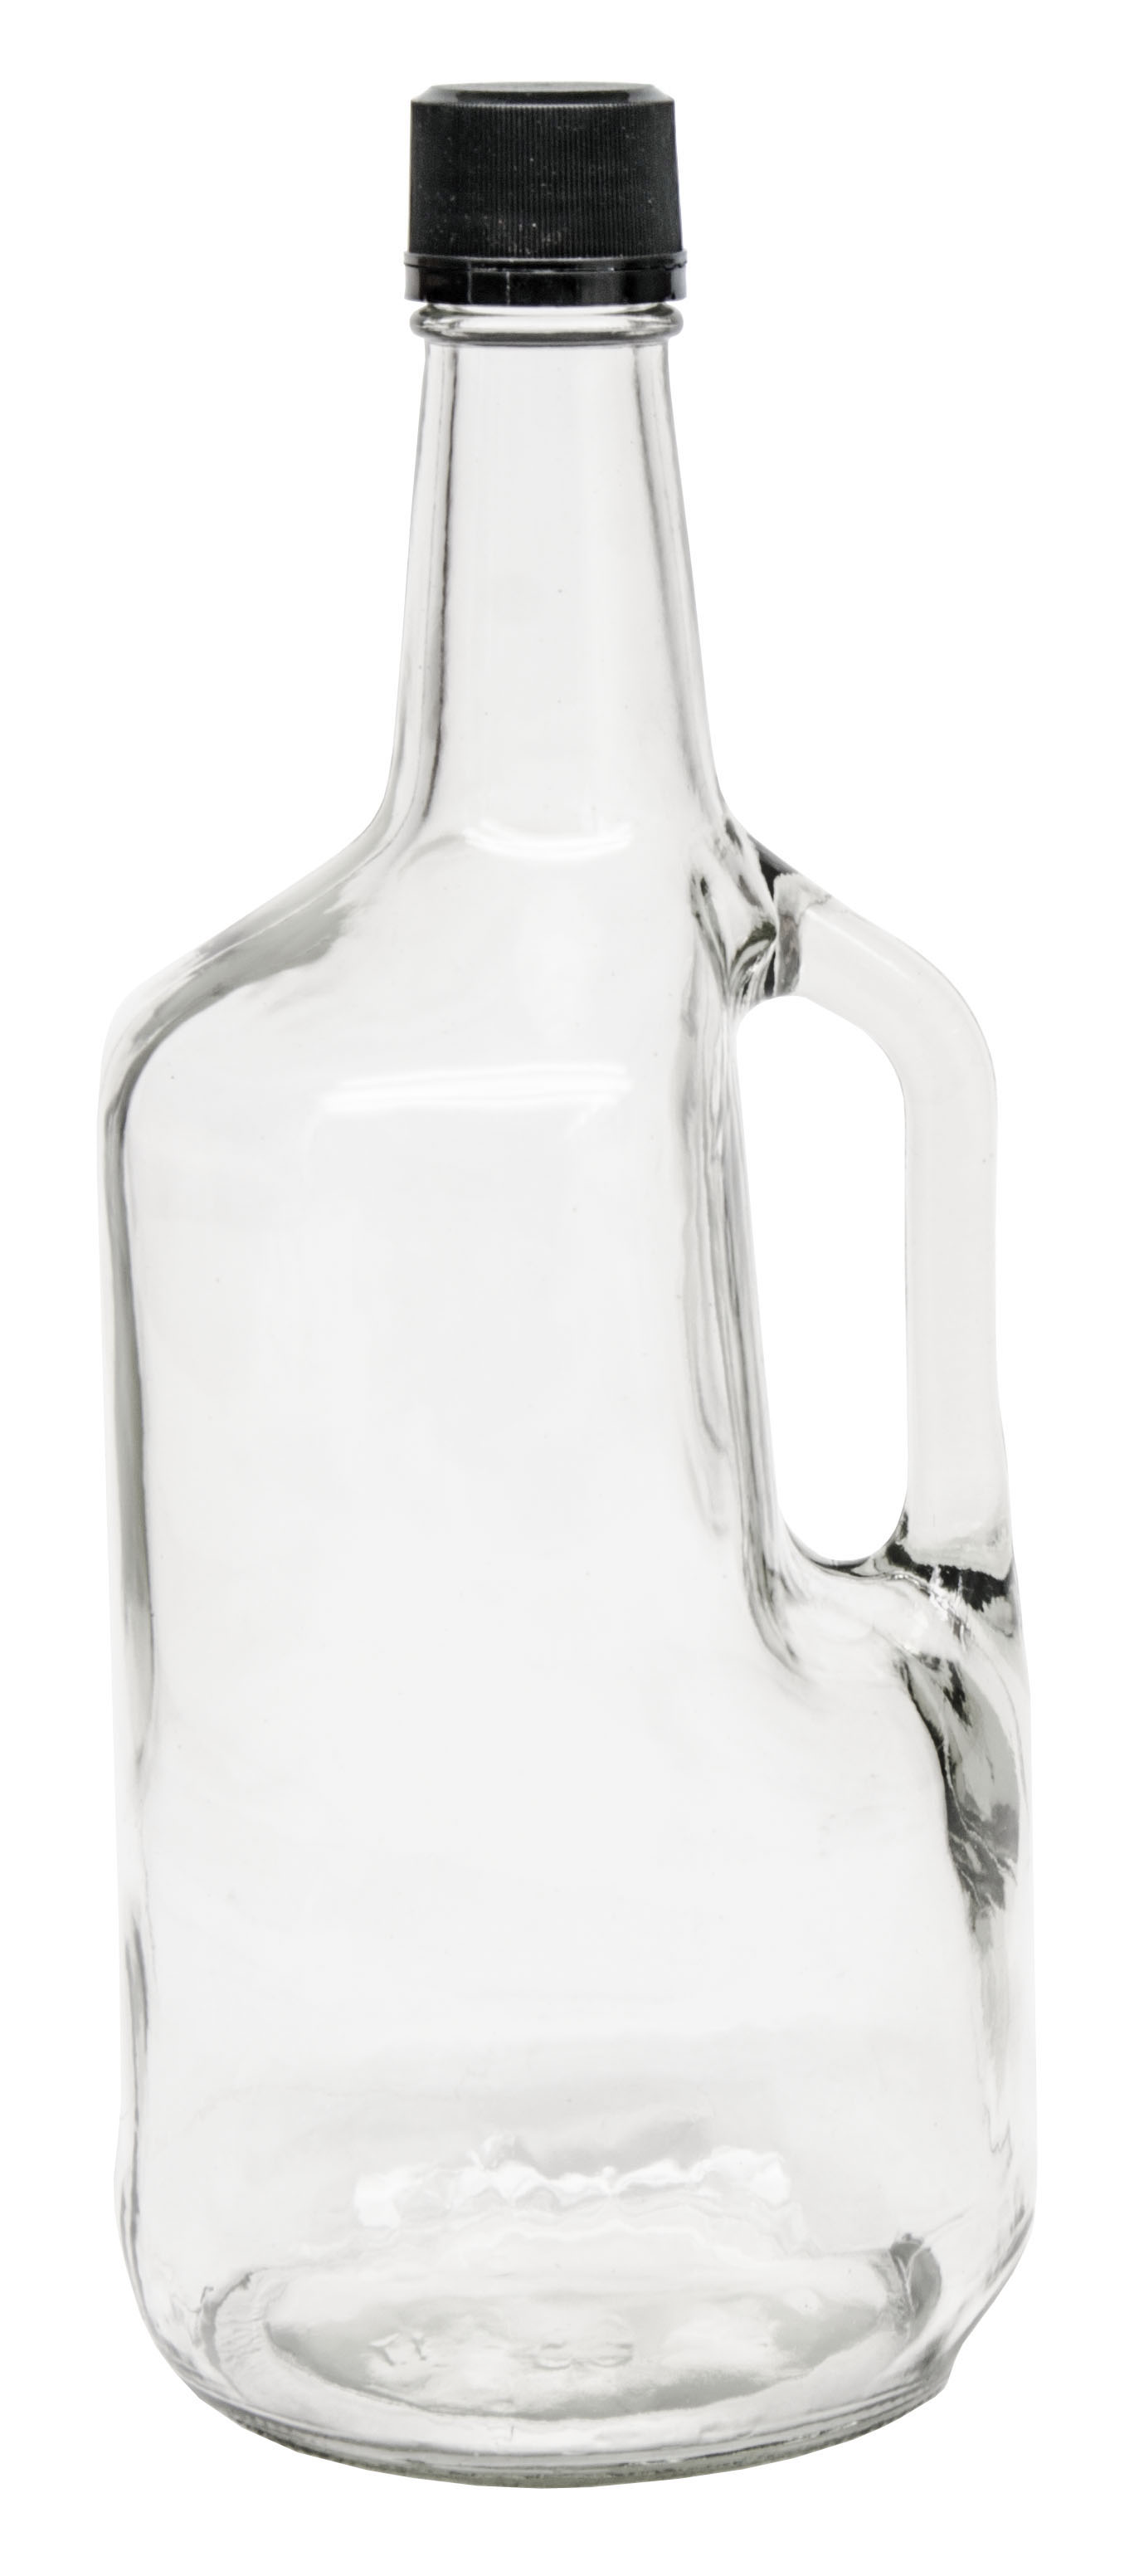 1.75 Liter Clear Glass Liquor Bottles